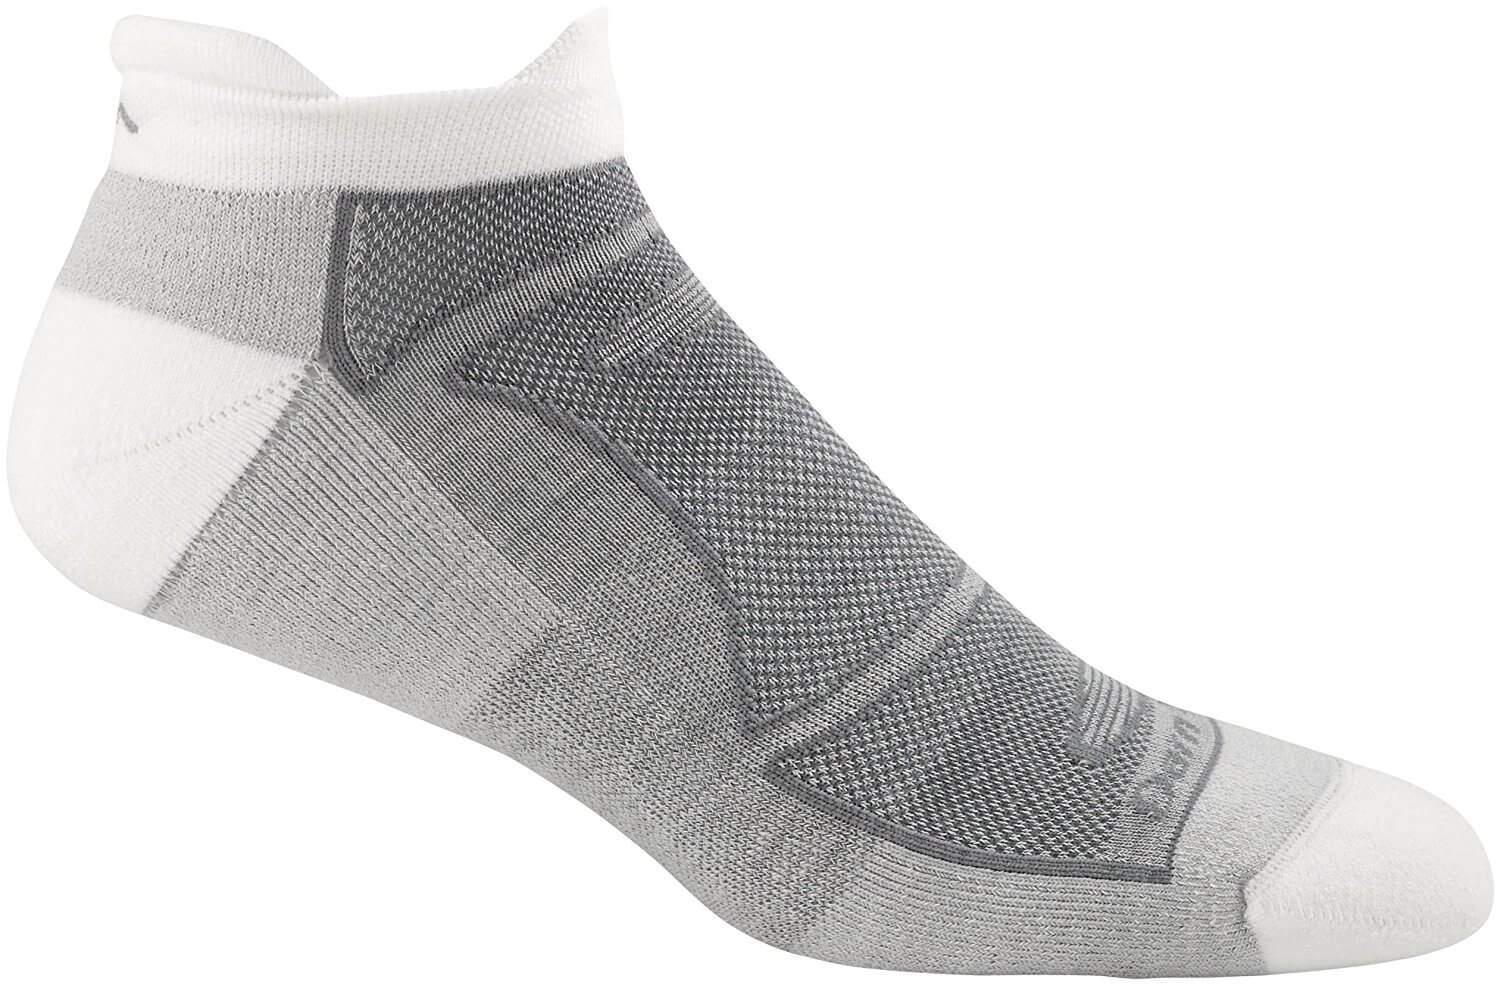 Best Merino Wool Socks in 2019